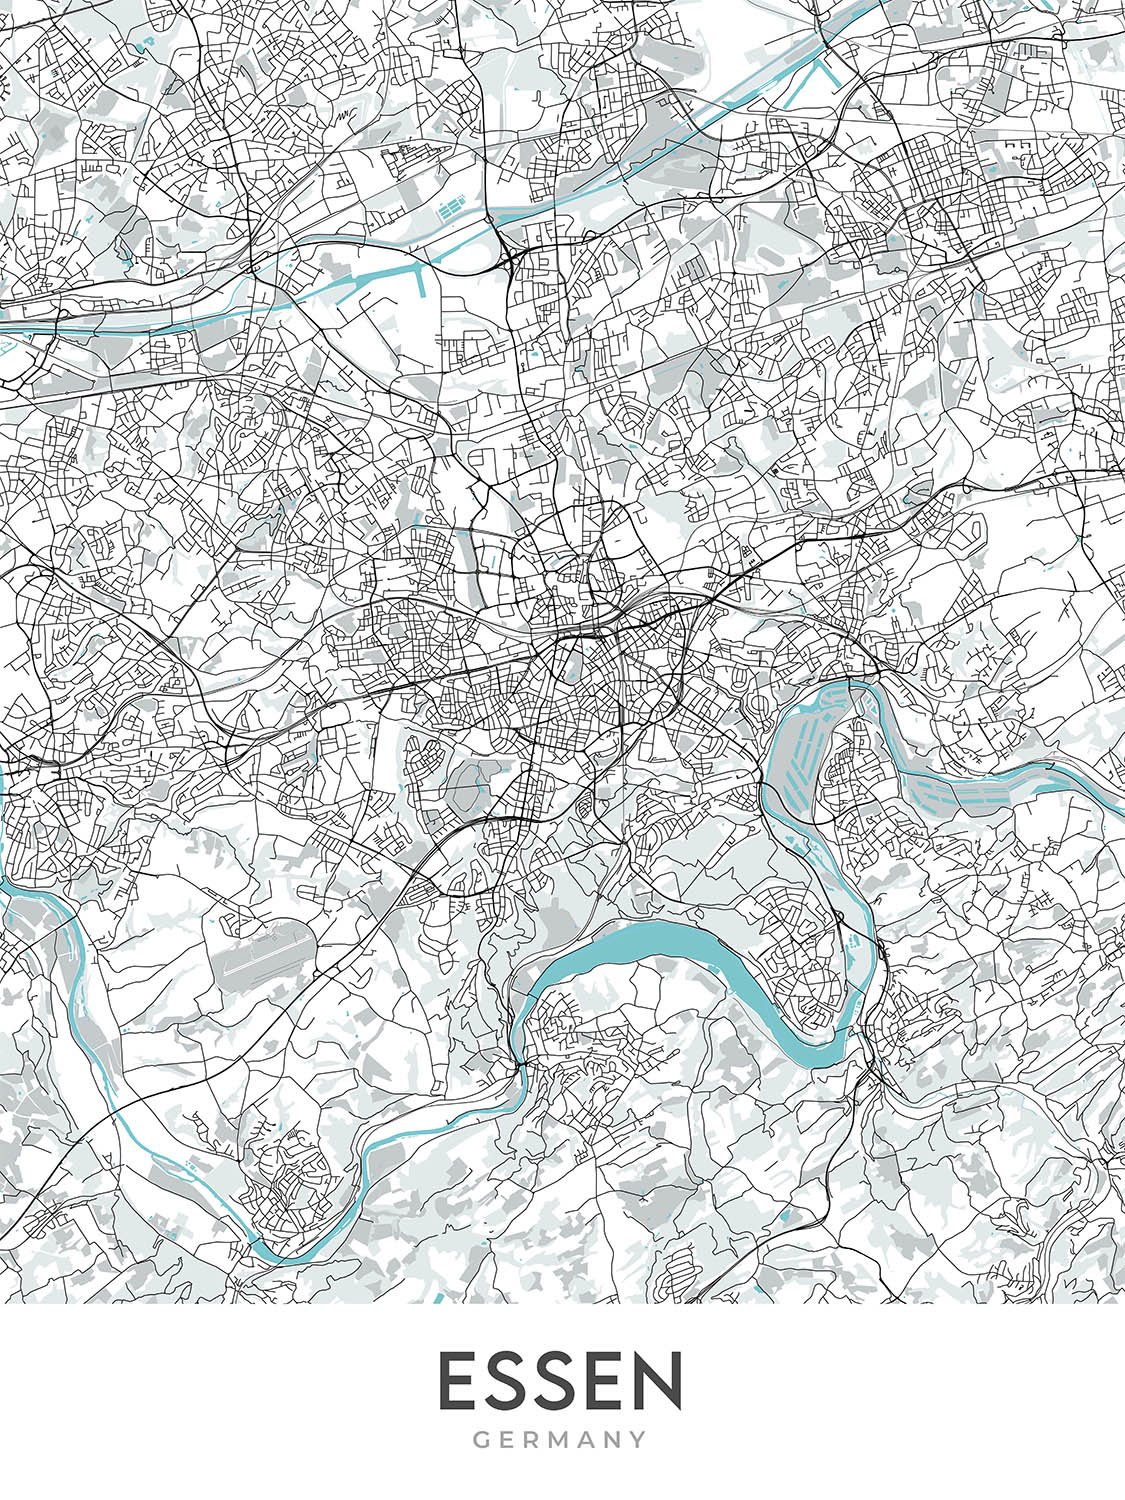 Mapa moderno de la ciudad de Essen, Alemania: Baldeneysee, Museo Folkwang, A40, Filarmónica de Essen, Stadtkern